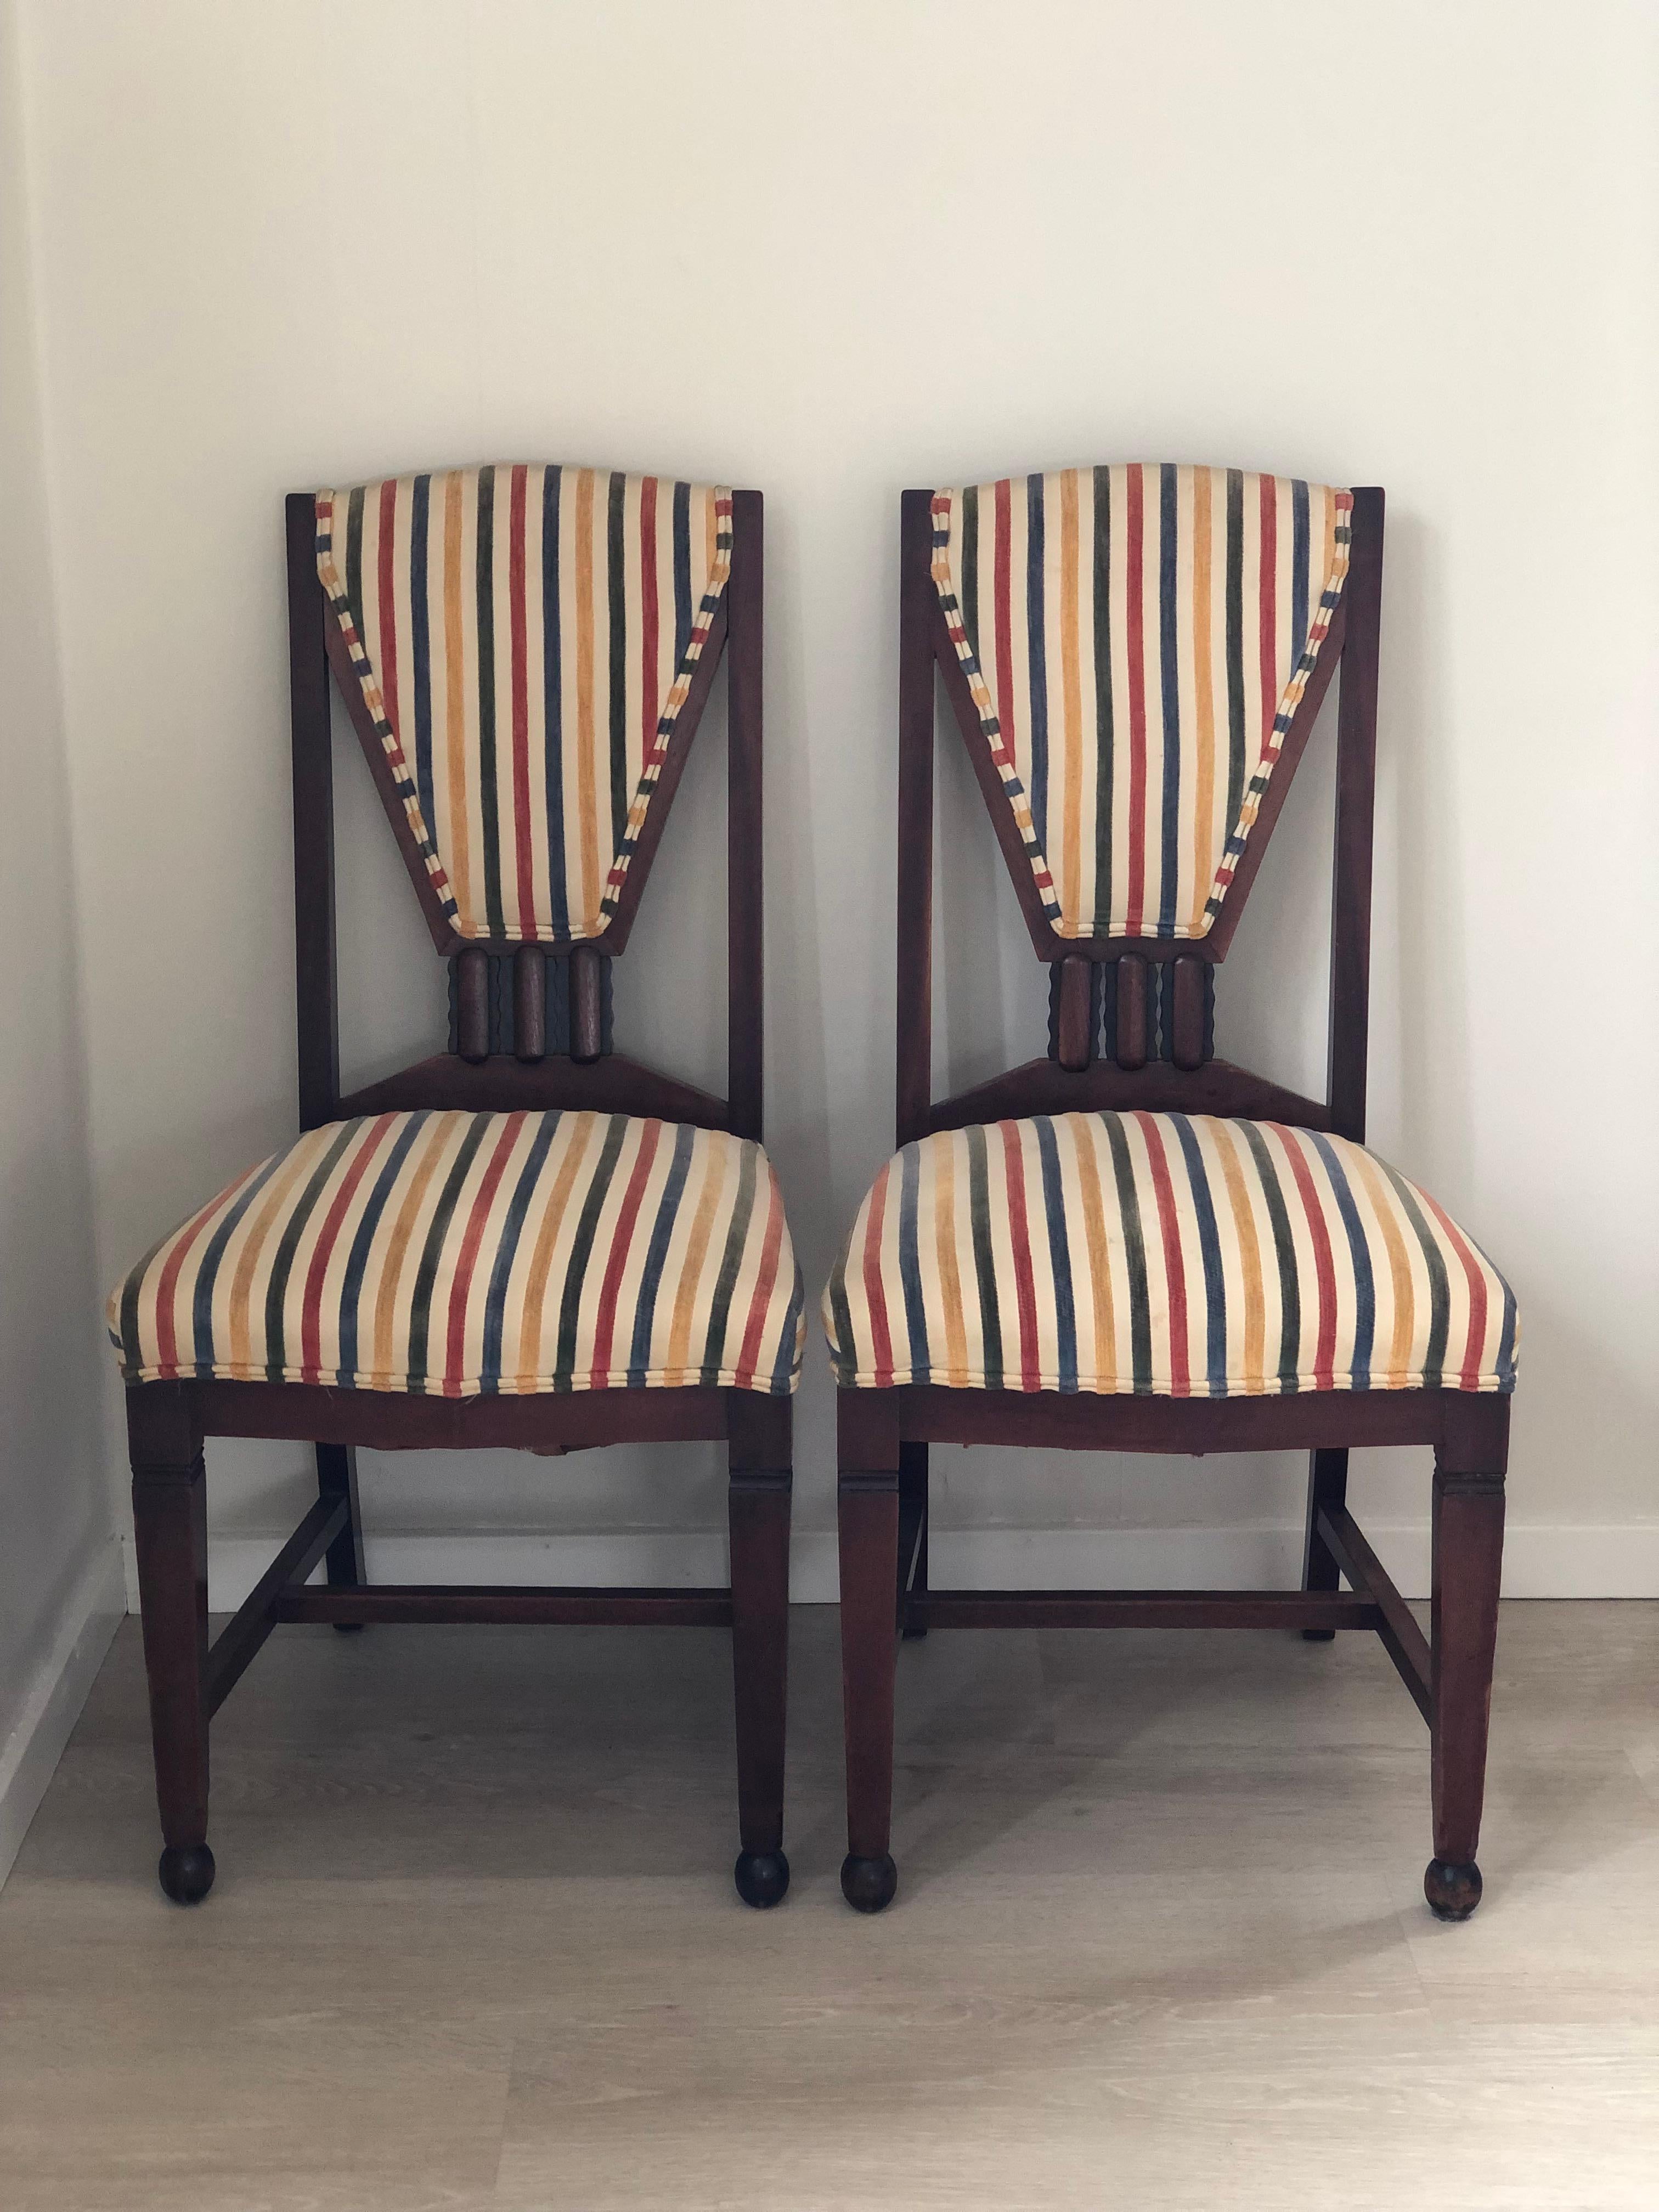 Un ensemble unique de chaises d'école d'Amsterdam, de style Art déco et de haute qualité artisanale, provenant des Pays-Bas, années 1930. Les chaises ont été conçues et fabriquées par le fabricant de meubles 't Woonhuys d'Amsterdam. Chaises